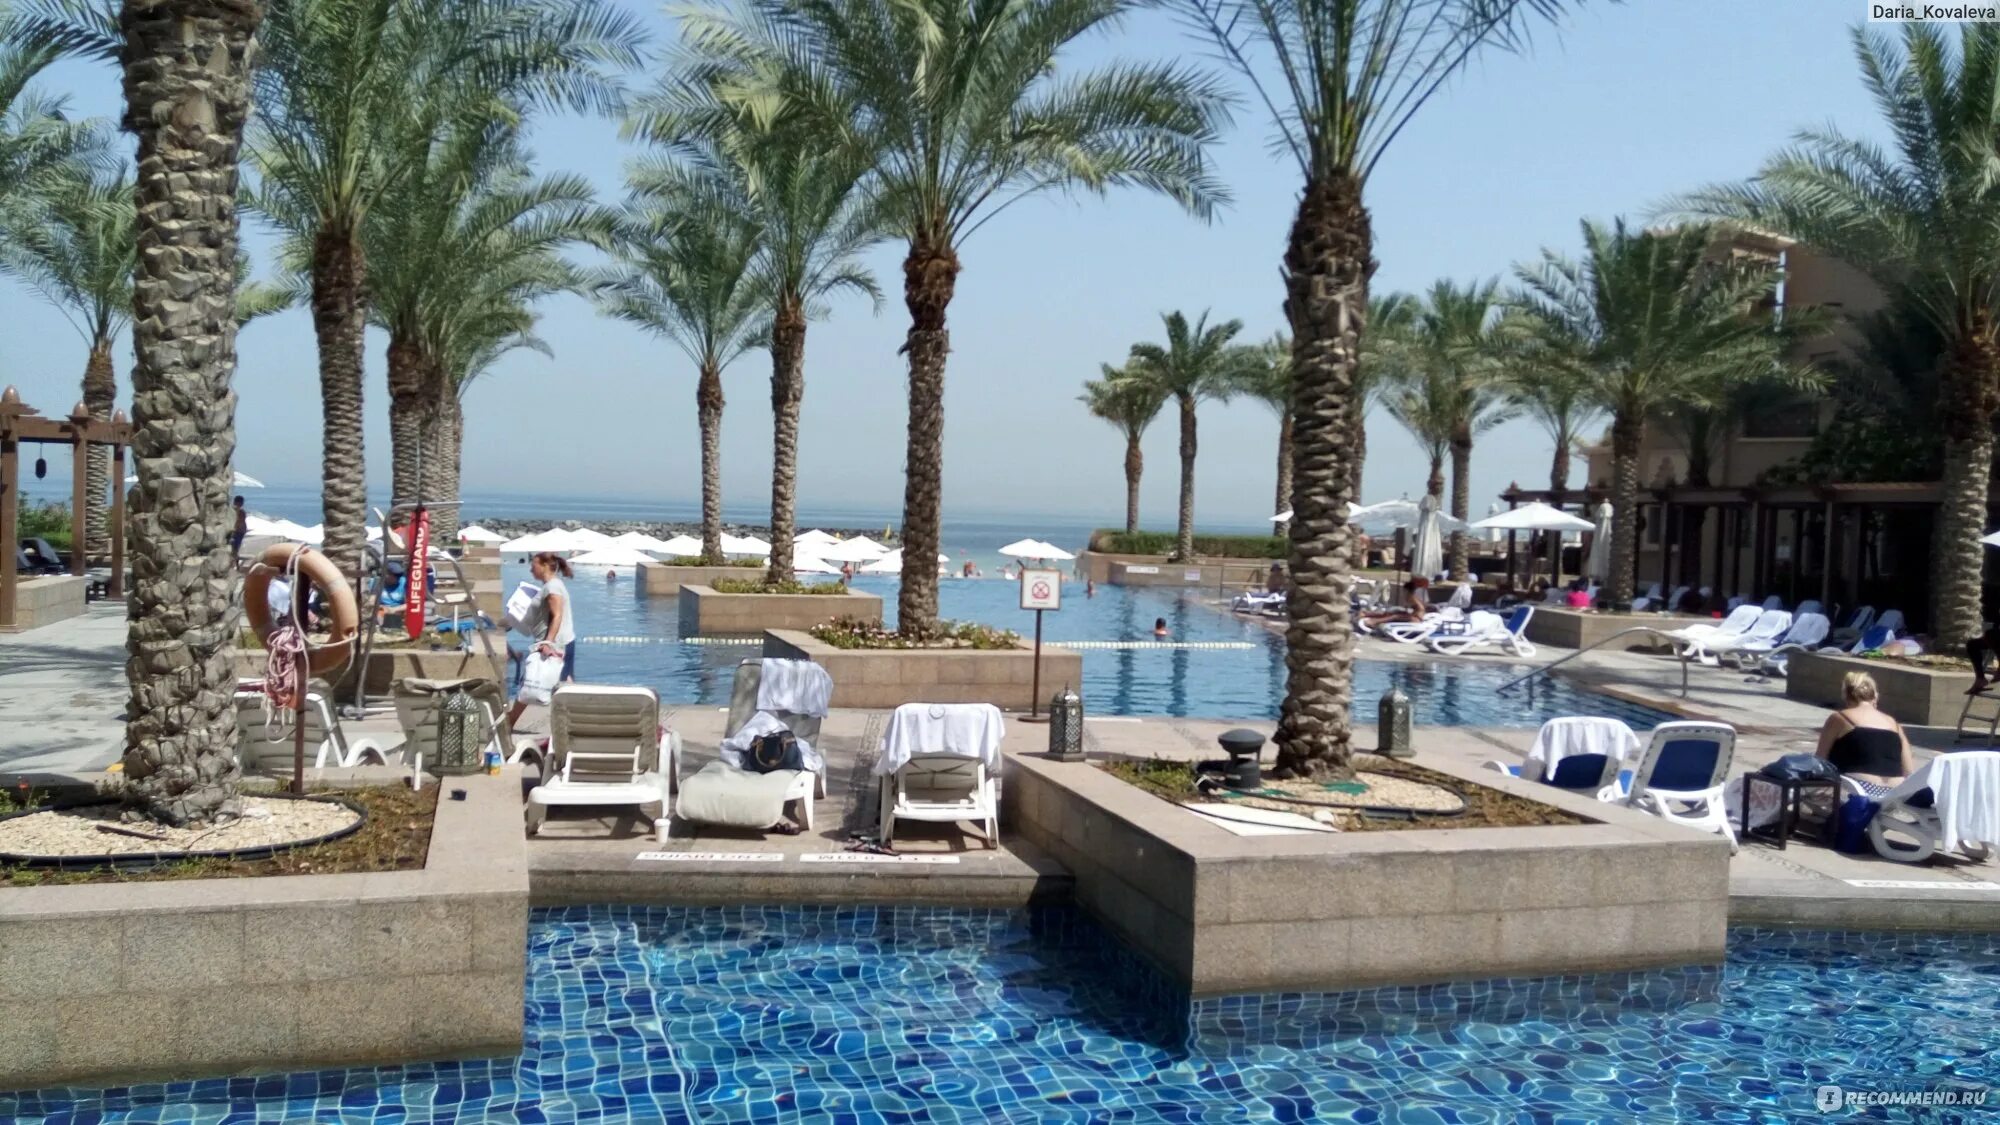 Отель Sheraton Sharjah Beach Resort Spa 5. ОАЭ отель Sheraton Sharjah Beach 5. Sheraton Sharjah Beach Resort Spa 5 пляж. Шарджа отель Шератон 5 звезд. Шератон спа шарджа